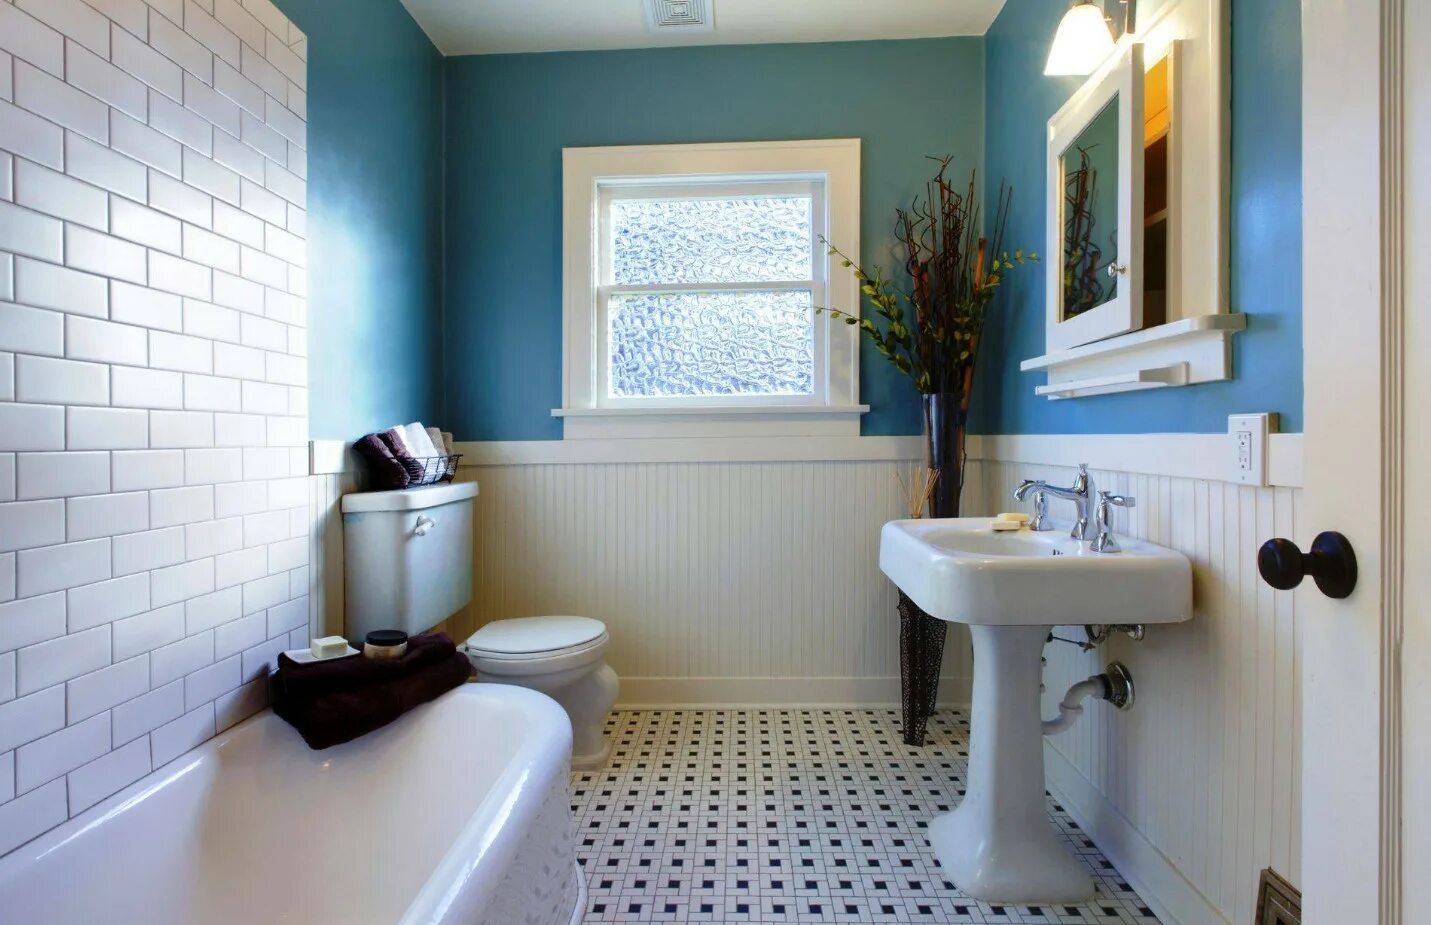 Отделка ванной комнаты плитка и краска. Отделка ванной комнаты без плитки. Интерьер ванной комнаты краской. Санузел с окрашенными стенами. Чем можно покрыть стены в ванной